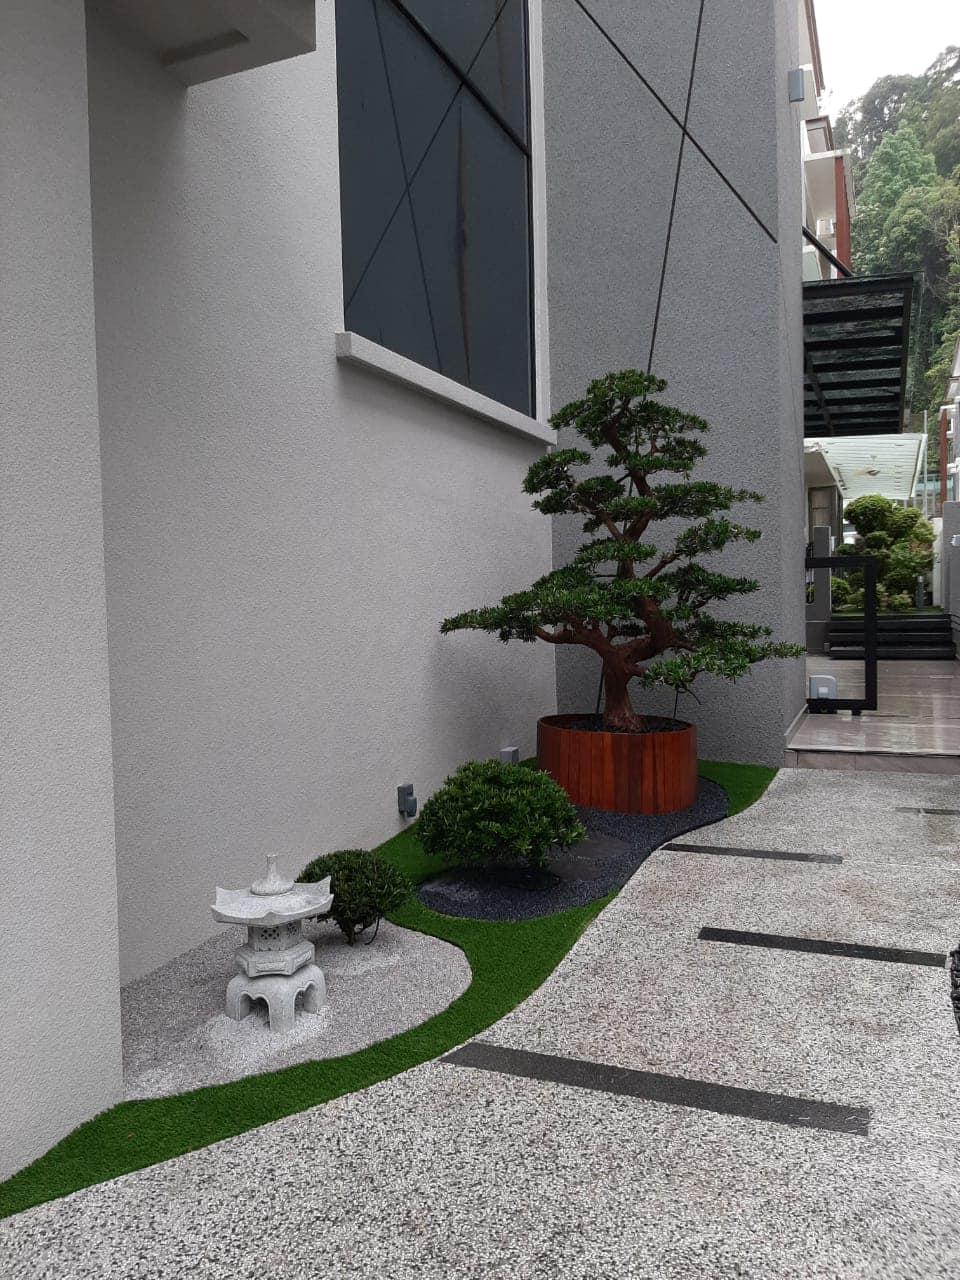 Pomysł na japoński ogród skalny - nr 12 / 40 pomysłów na zen w ogrodzie